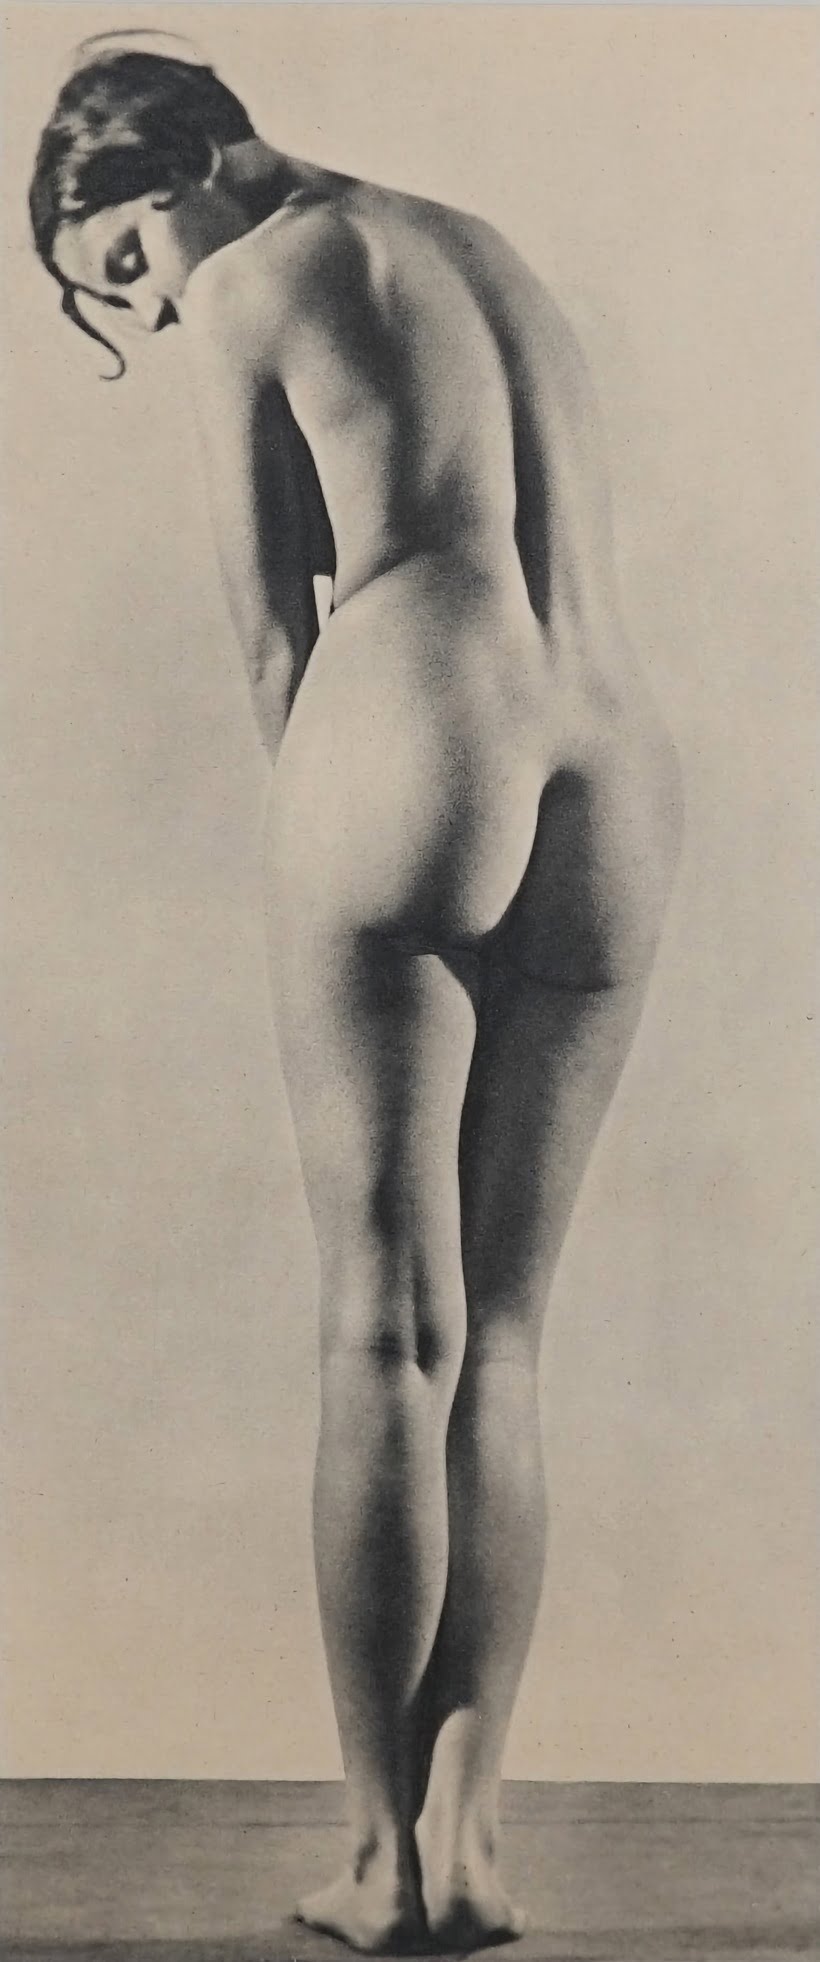 OS NUS DA FOTÓGRAFA HÚNGARA ERGY LANDAU Artes & contextos a ERGY LANDAU 1896 1967 nude study. photogravure print ca. 1930s.